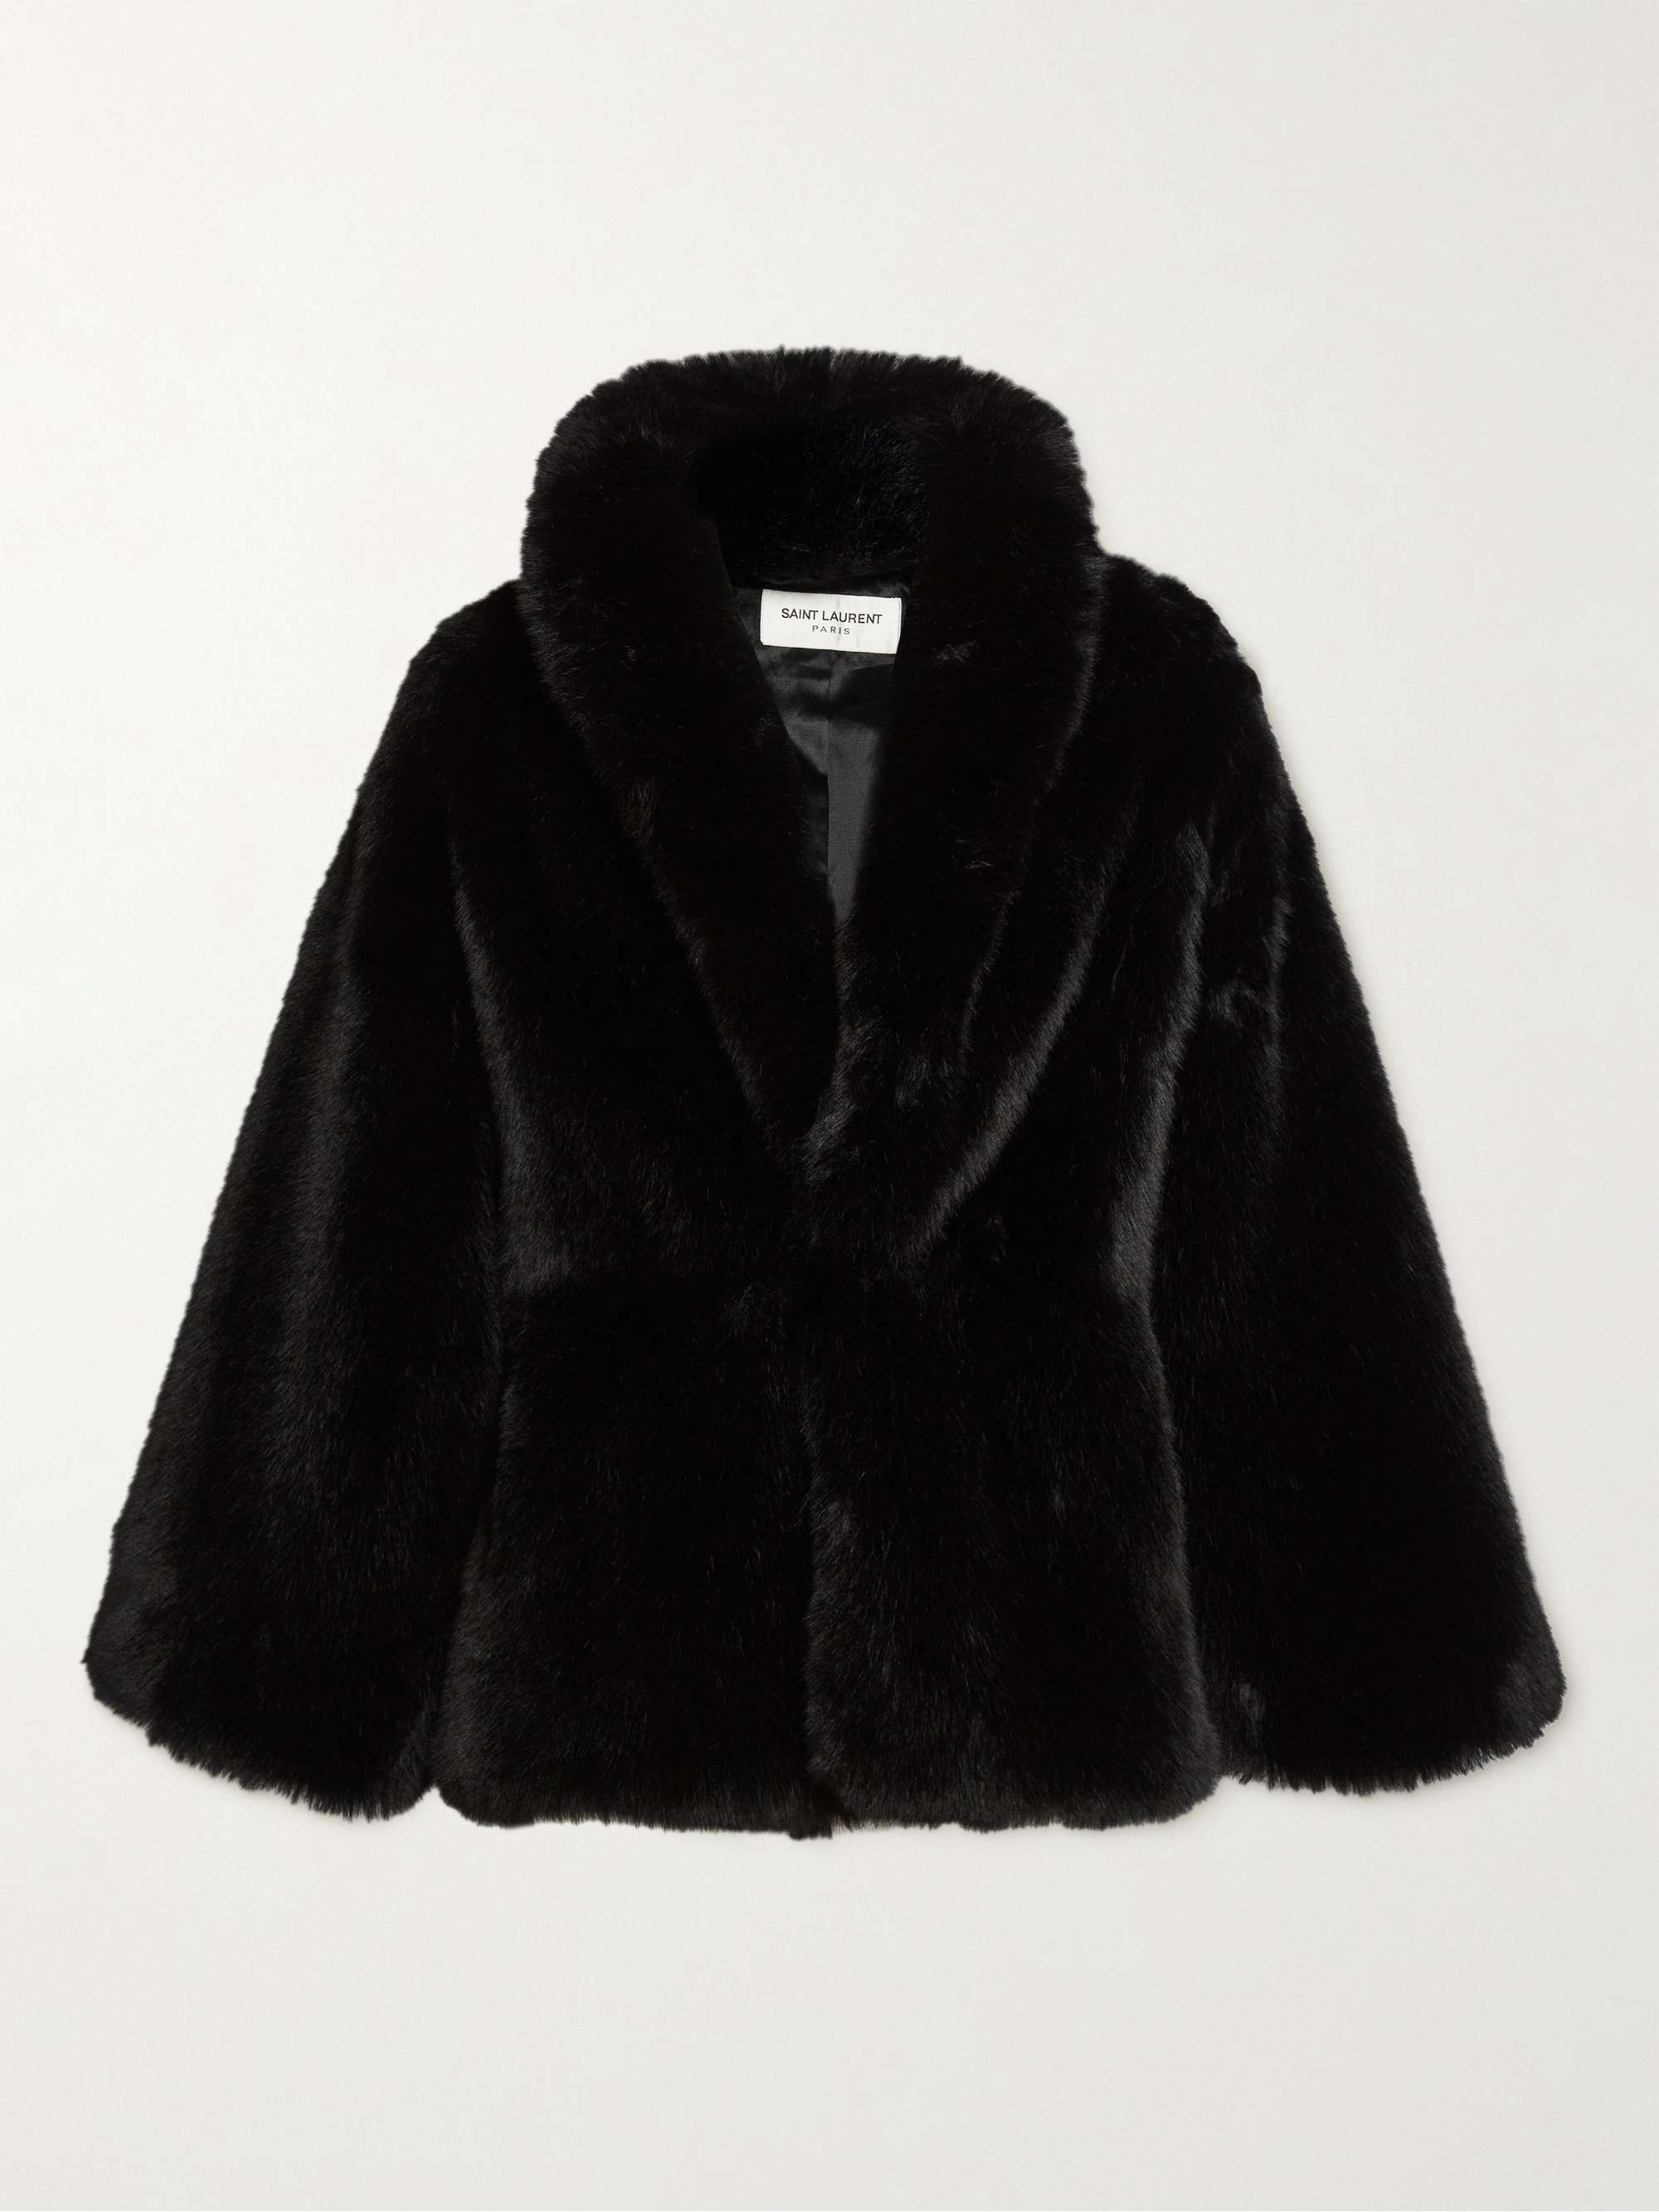 Black Faux Fur Coat | SAINT LAURENT | MR PORTER